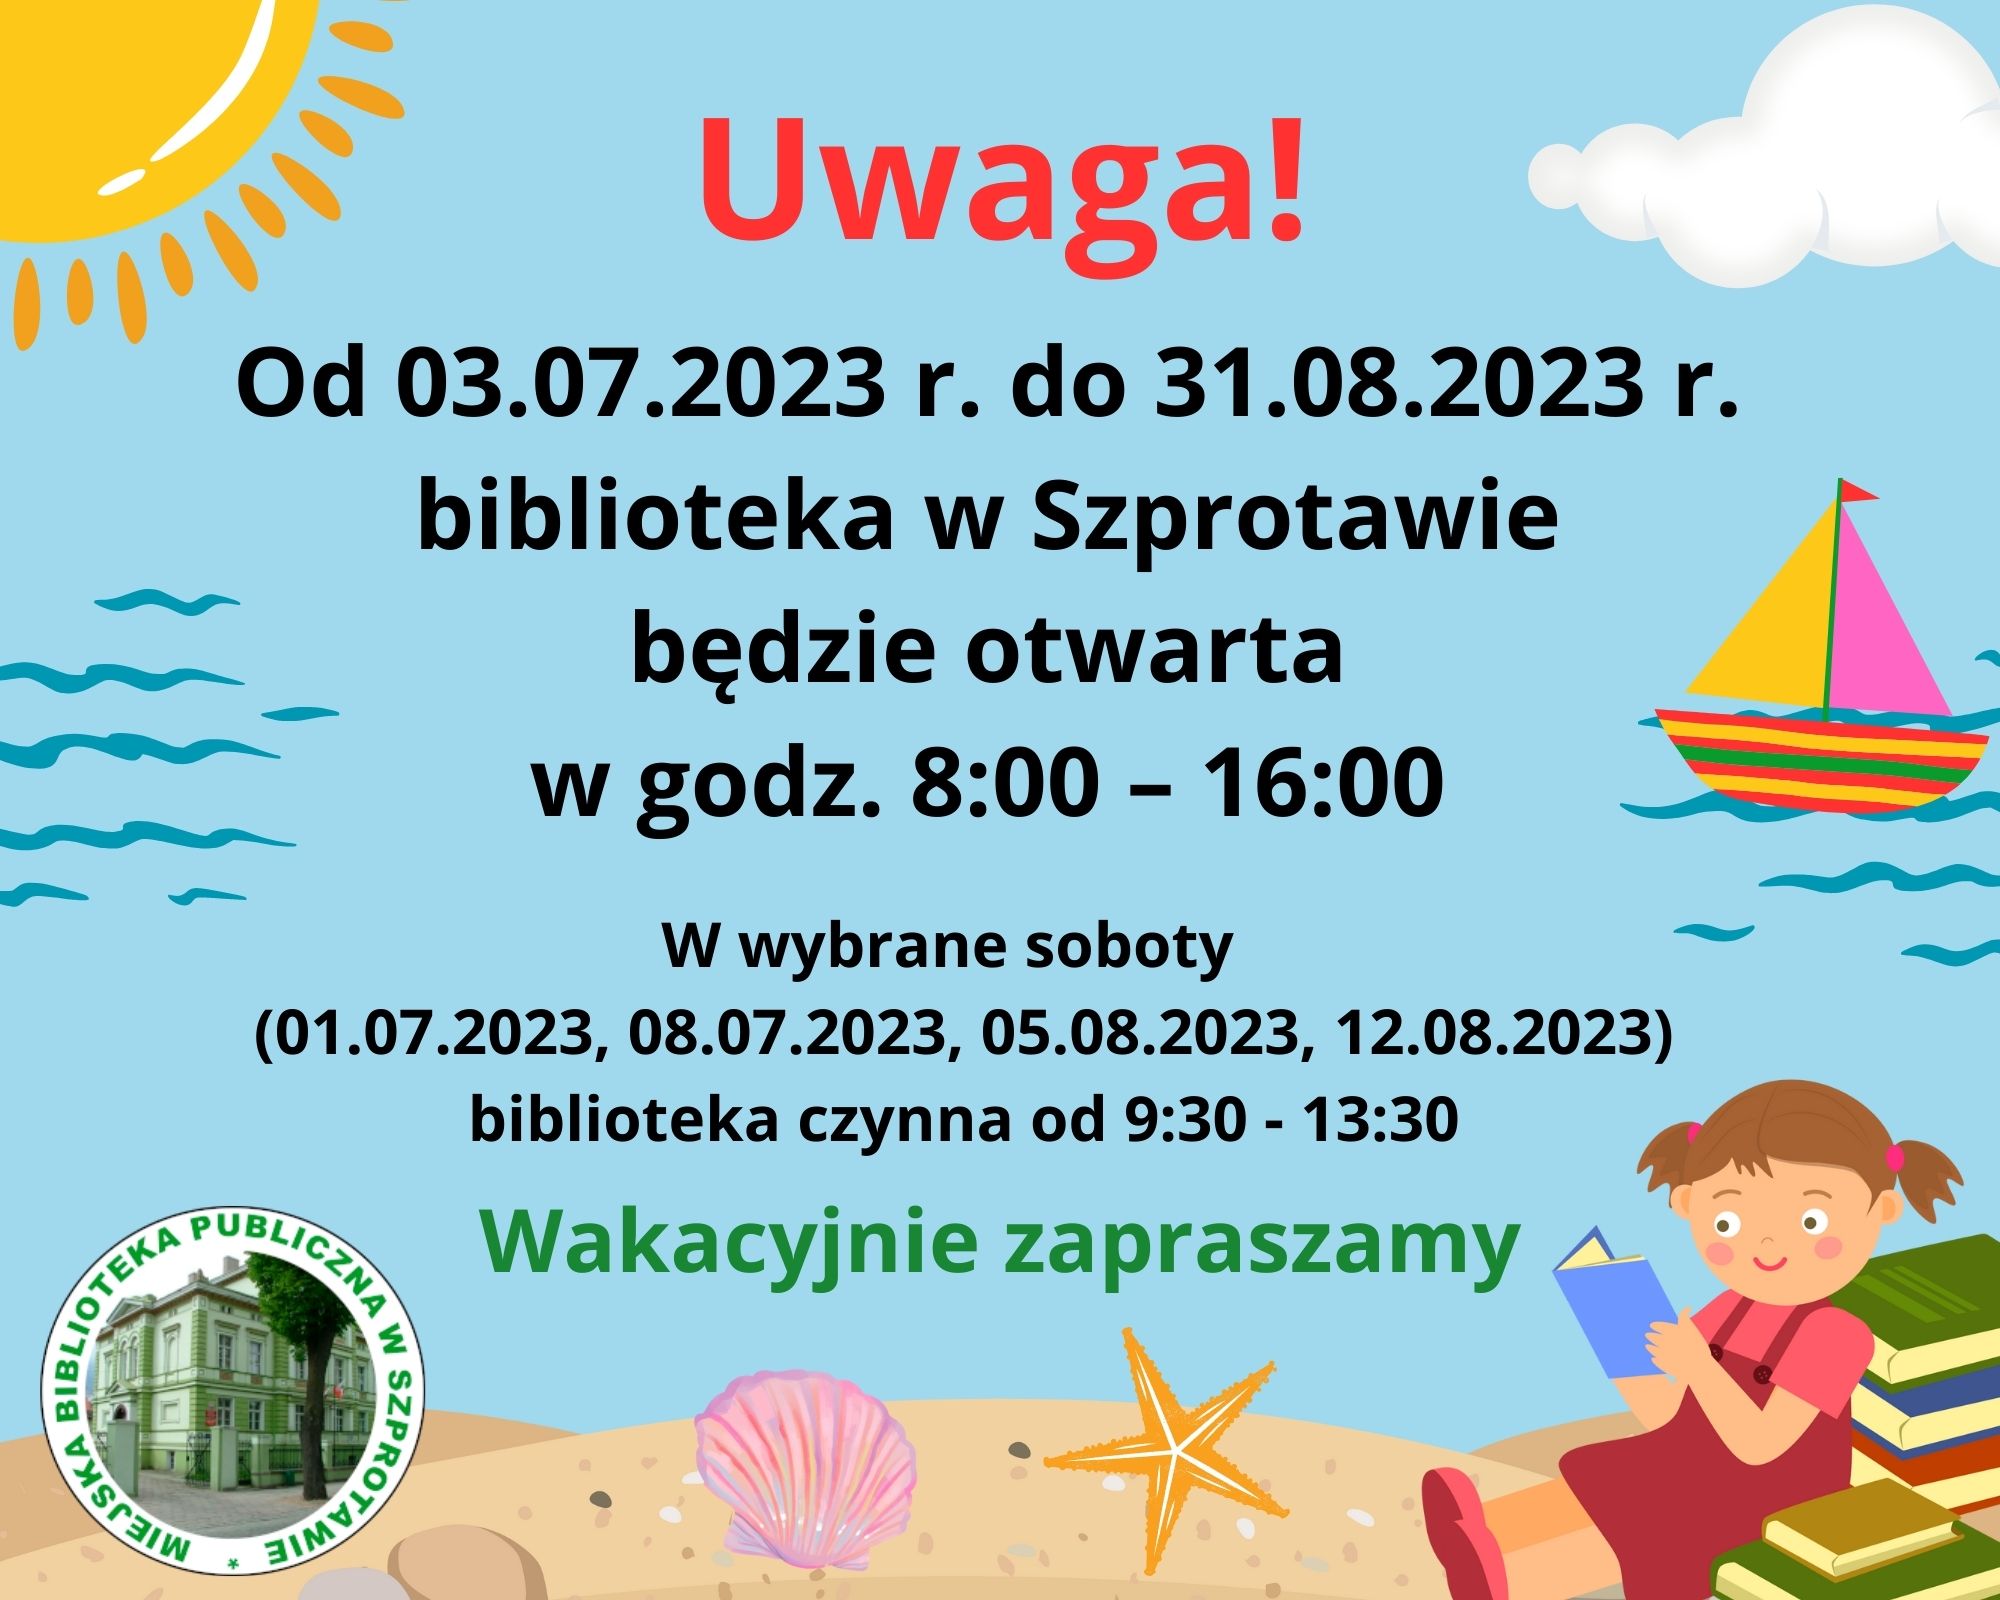 Od dnia 03 lipca 2023 roku do dnia 31 sierpnia 2023 r. MBP w Szprotawie w godzinach od 8 do 16. W wybrane soboty (1 i 8 lipca oraz 5 i 12 sierpnia biblioteka czynna od 9:30 do 13:30. Wakacyjnie zapraszamy